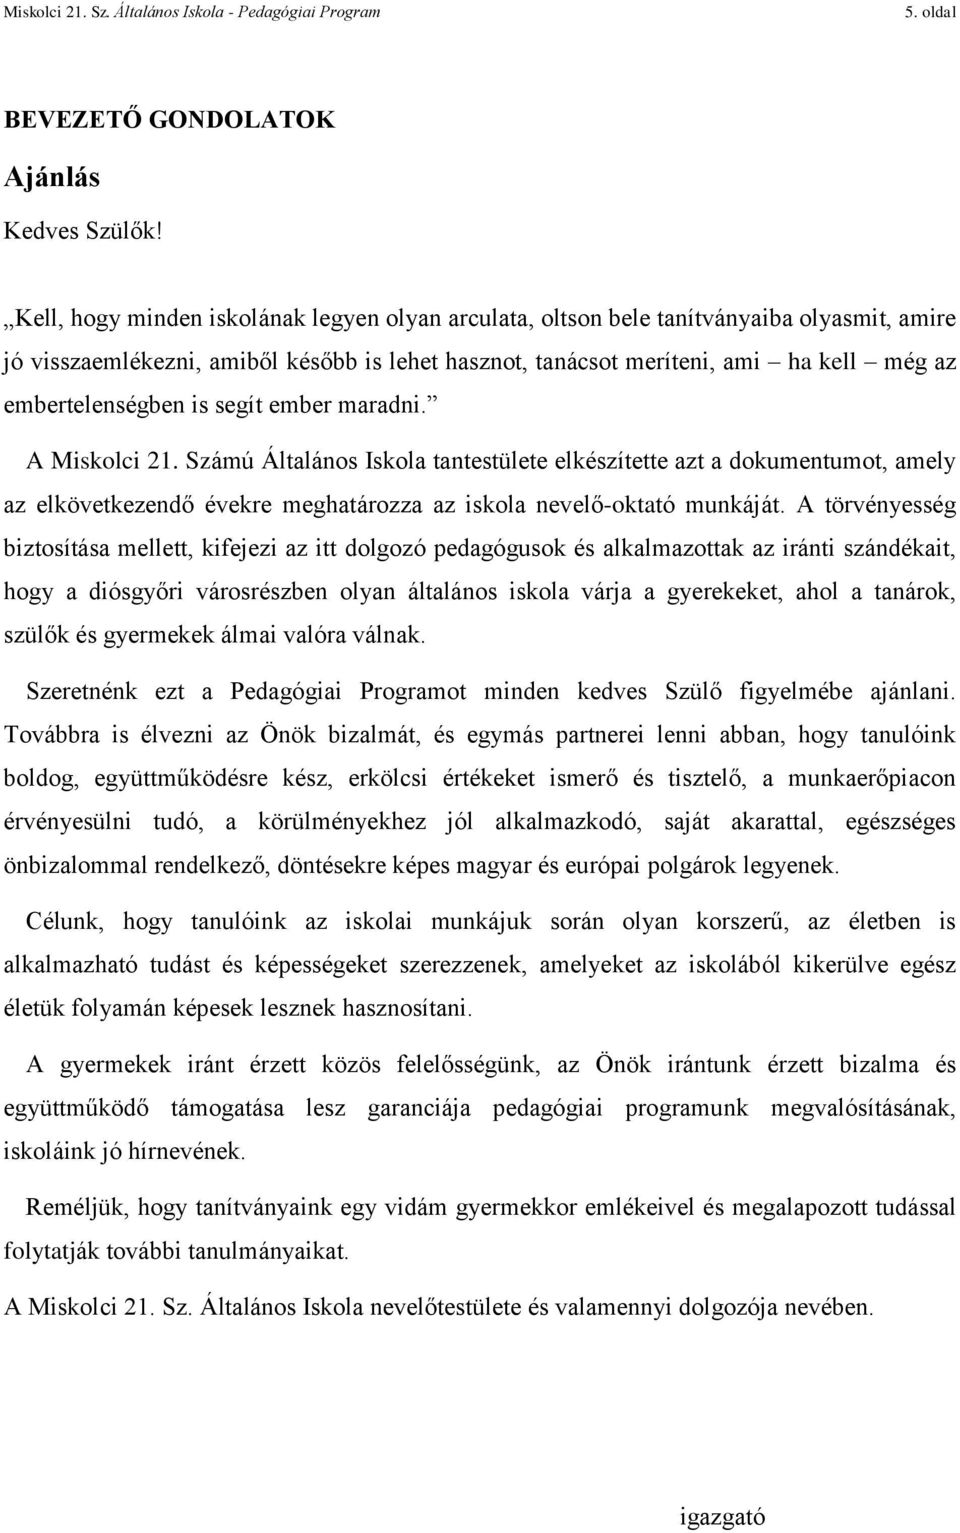 Pedagógiai Program. Miskolci 21. Sz. Általános Iskola MISKOLC Tóth Árpád út  PDF Ingyenes letöltés